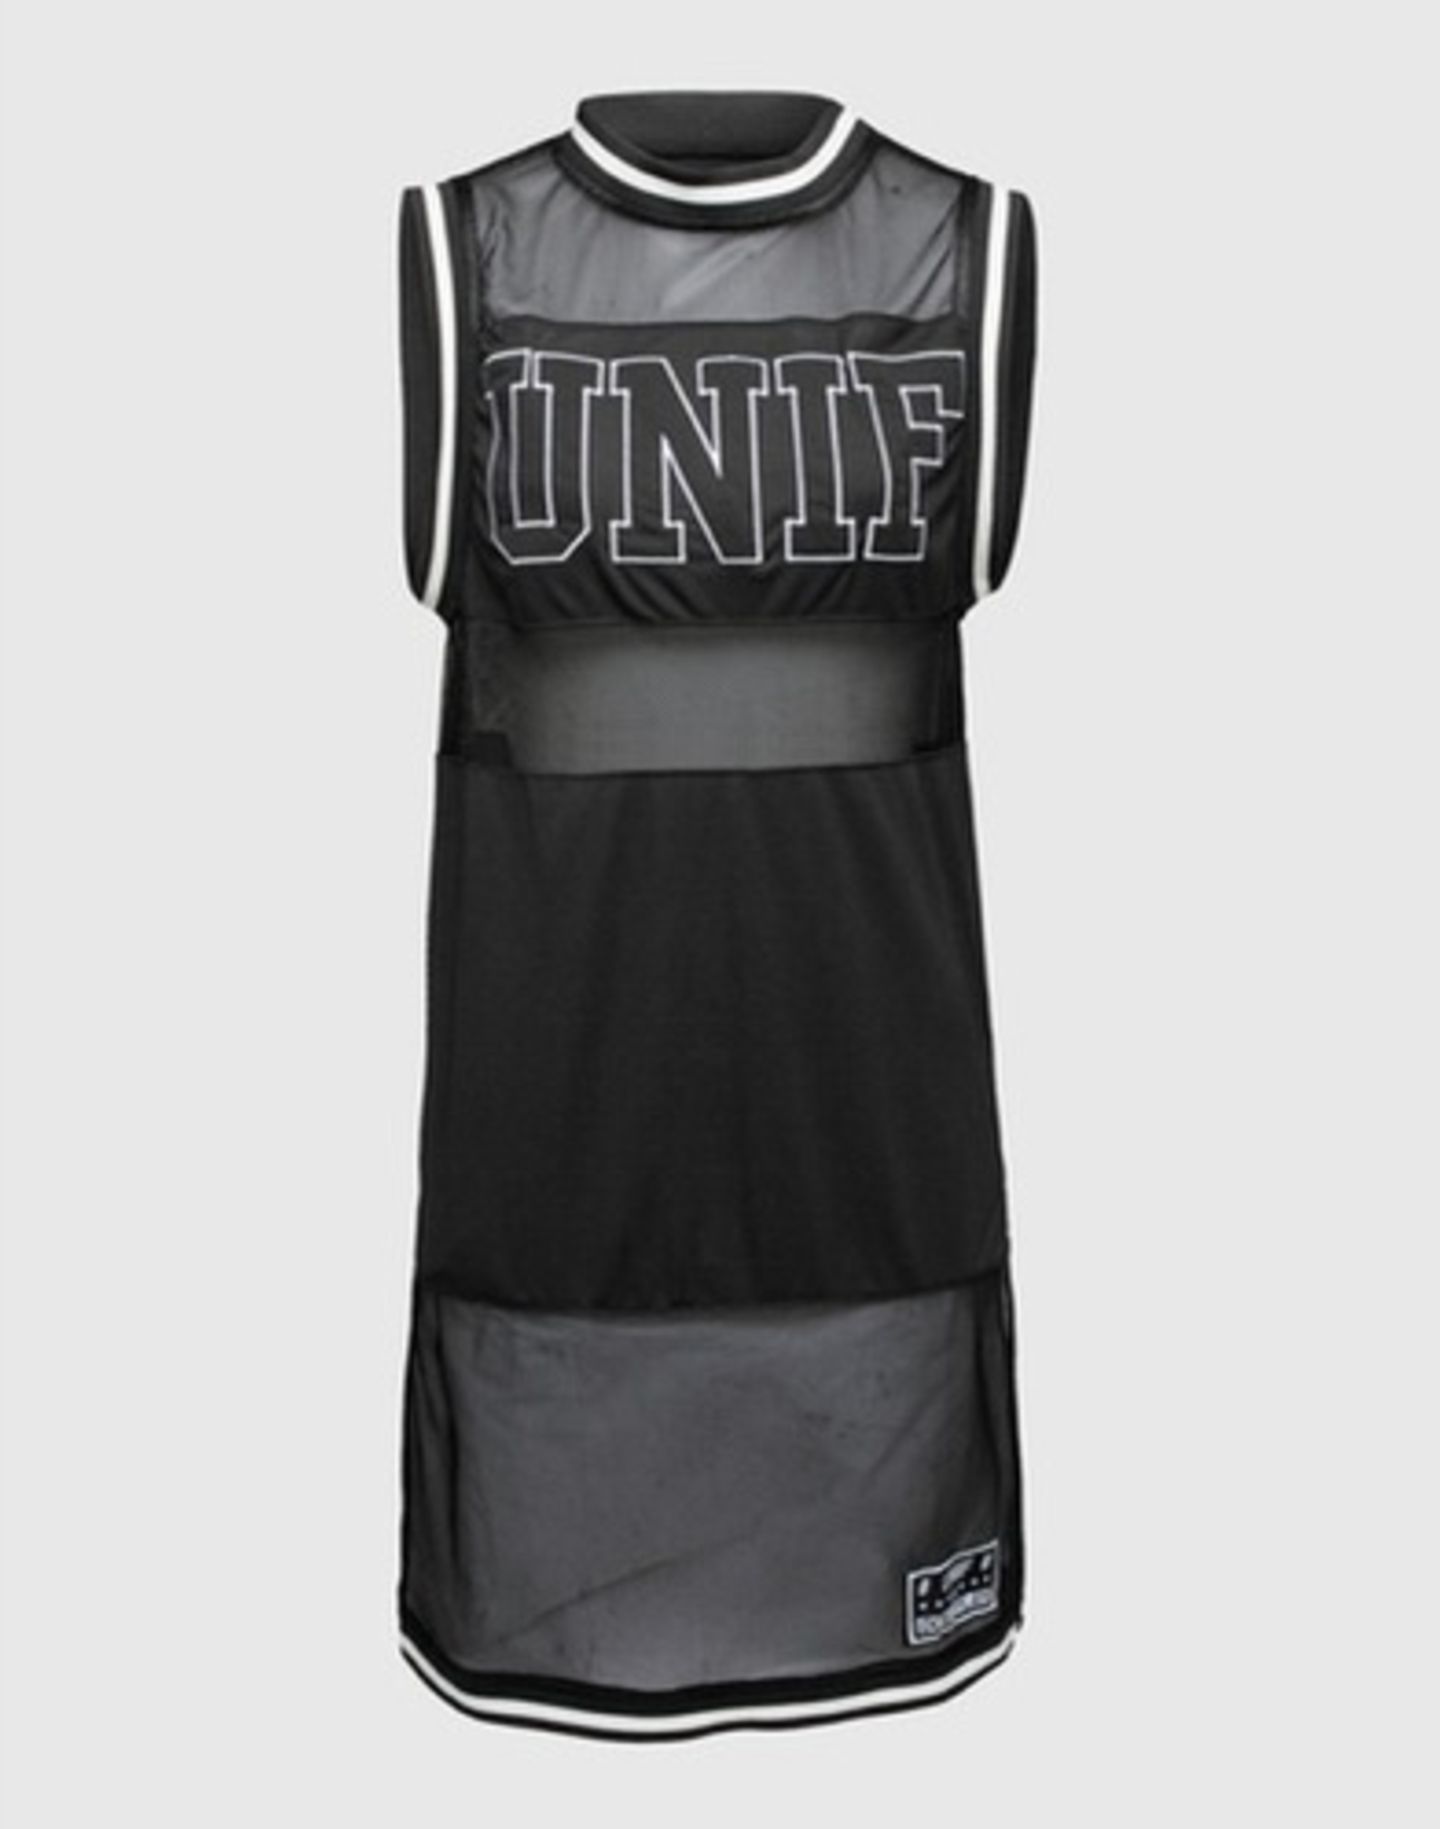 Schwarzes Kleid mit transparenten und blickdichten Teilen, seitlich geschlitzt von Unif über Edited, rund 55 Euro.